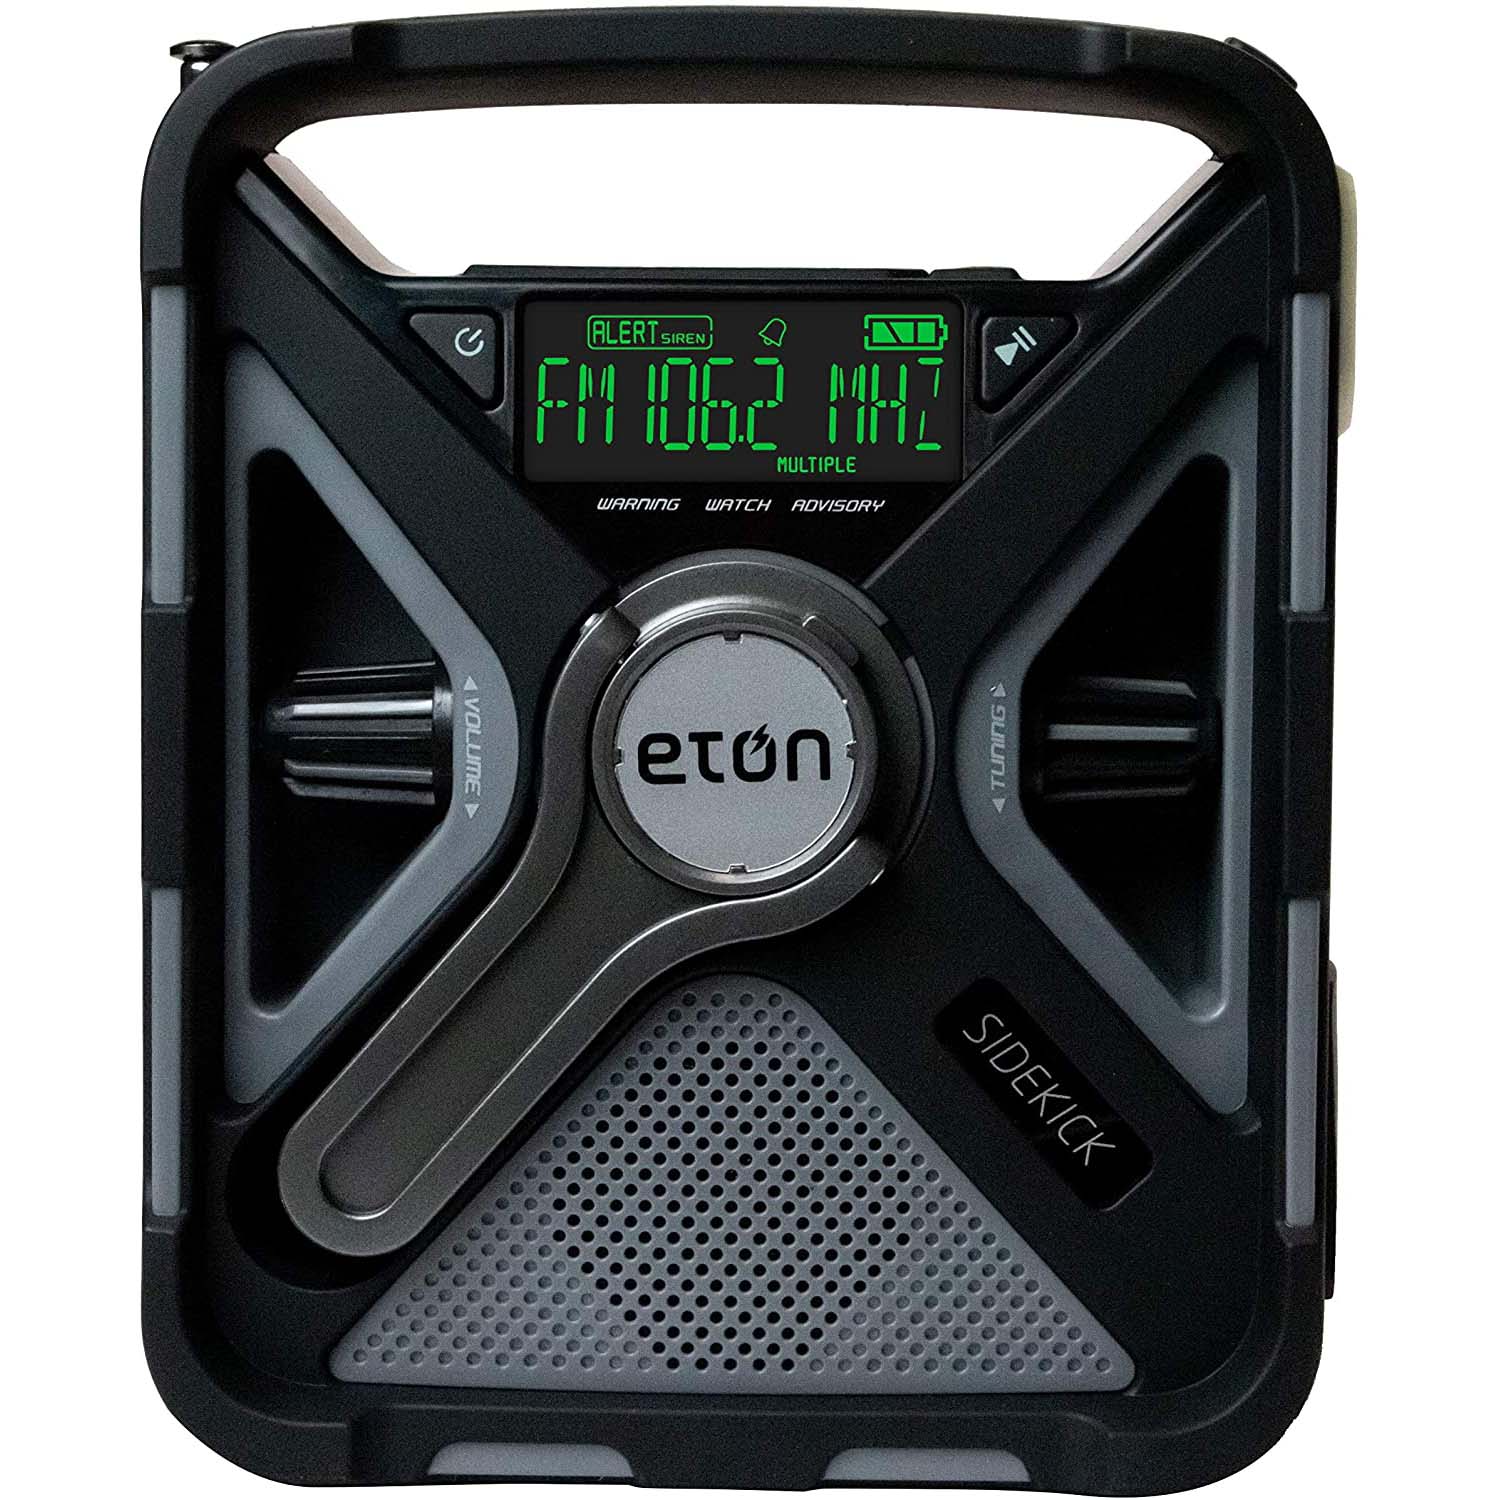 Radio meteorológica de emergencia Eton Sidekick con pantalla digital.